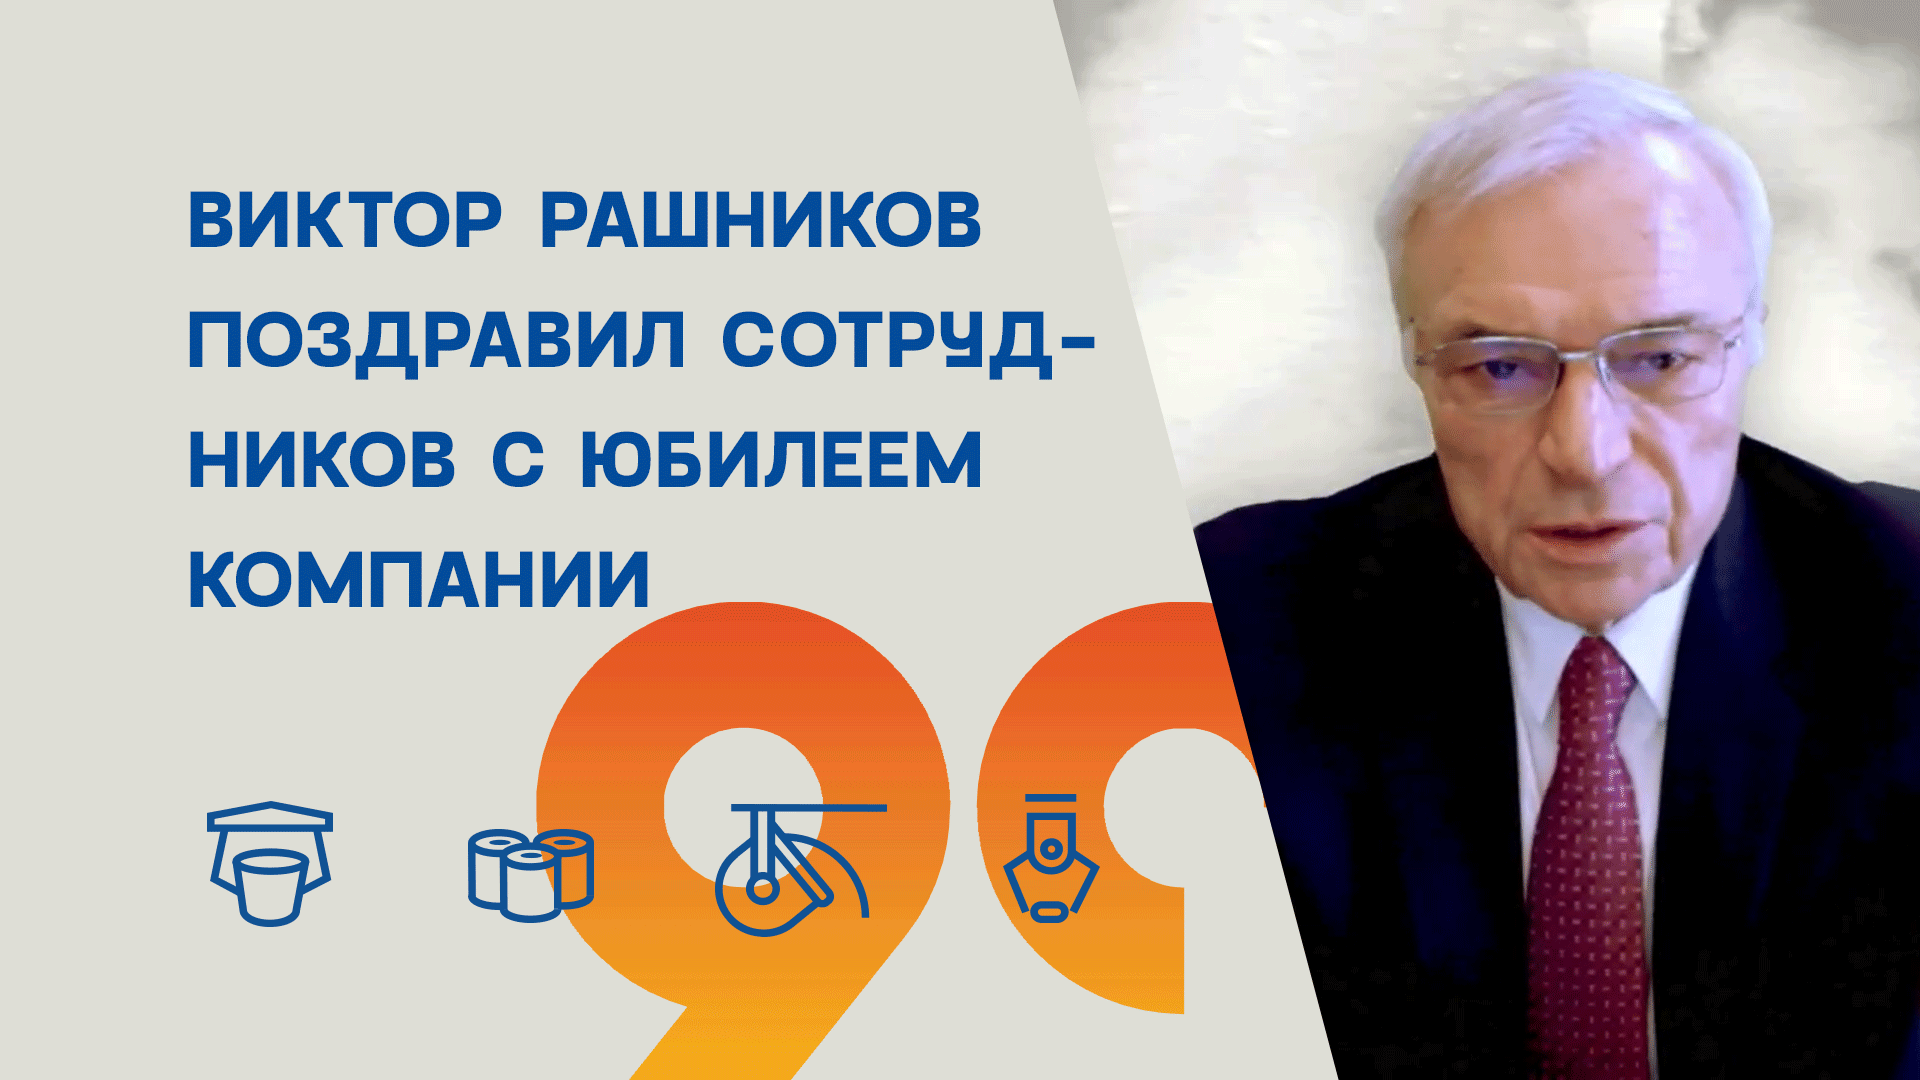 Виктор Рашников поздравил своих сотрудников с 90-летним юбилеем компаний.